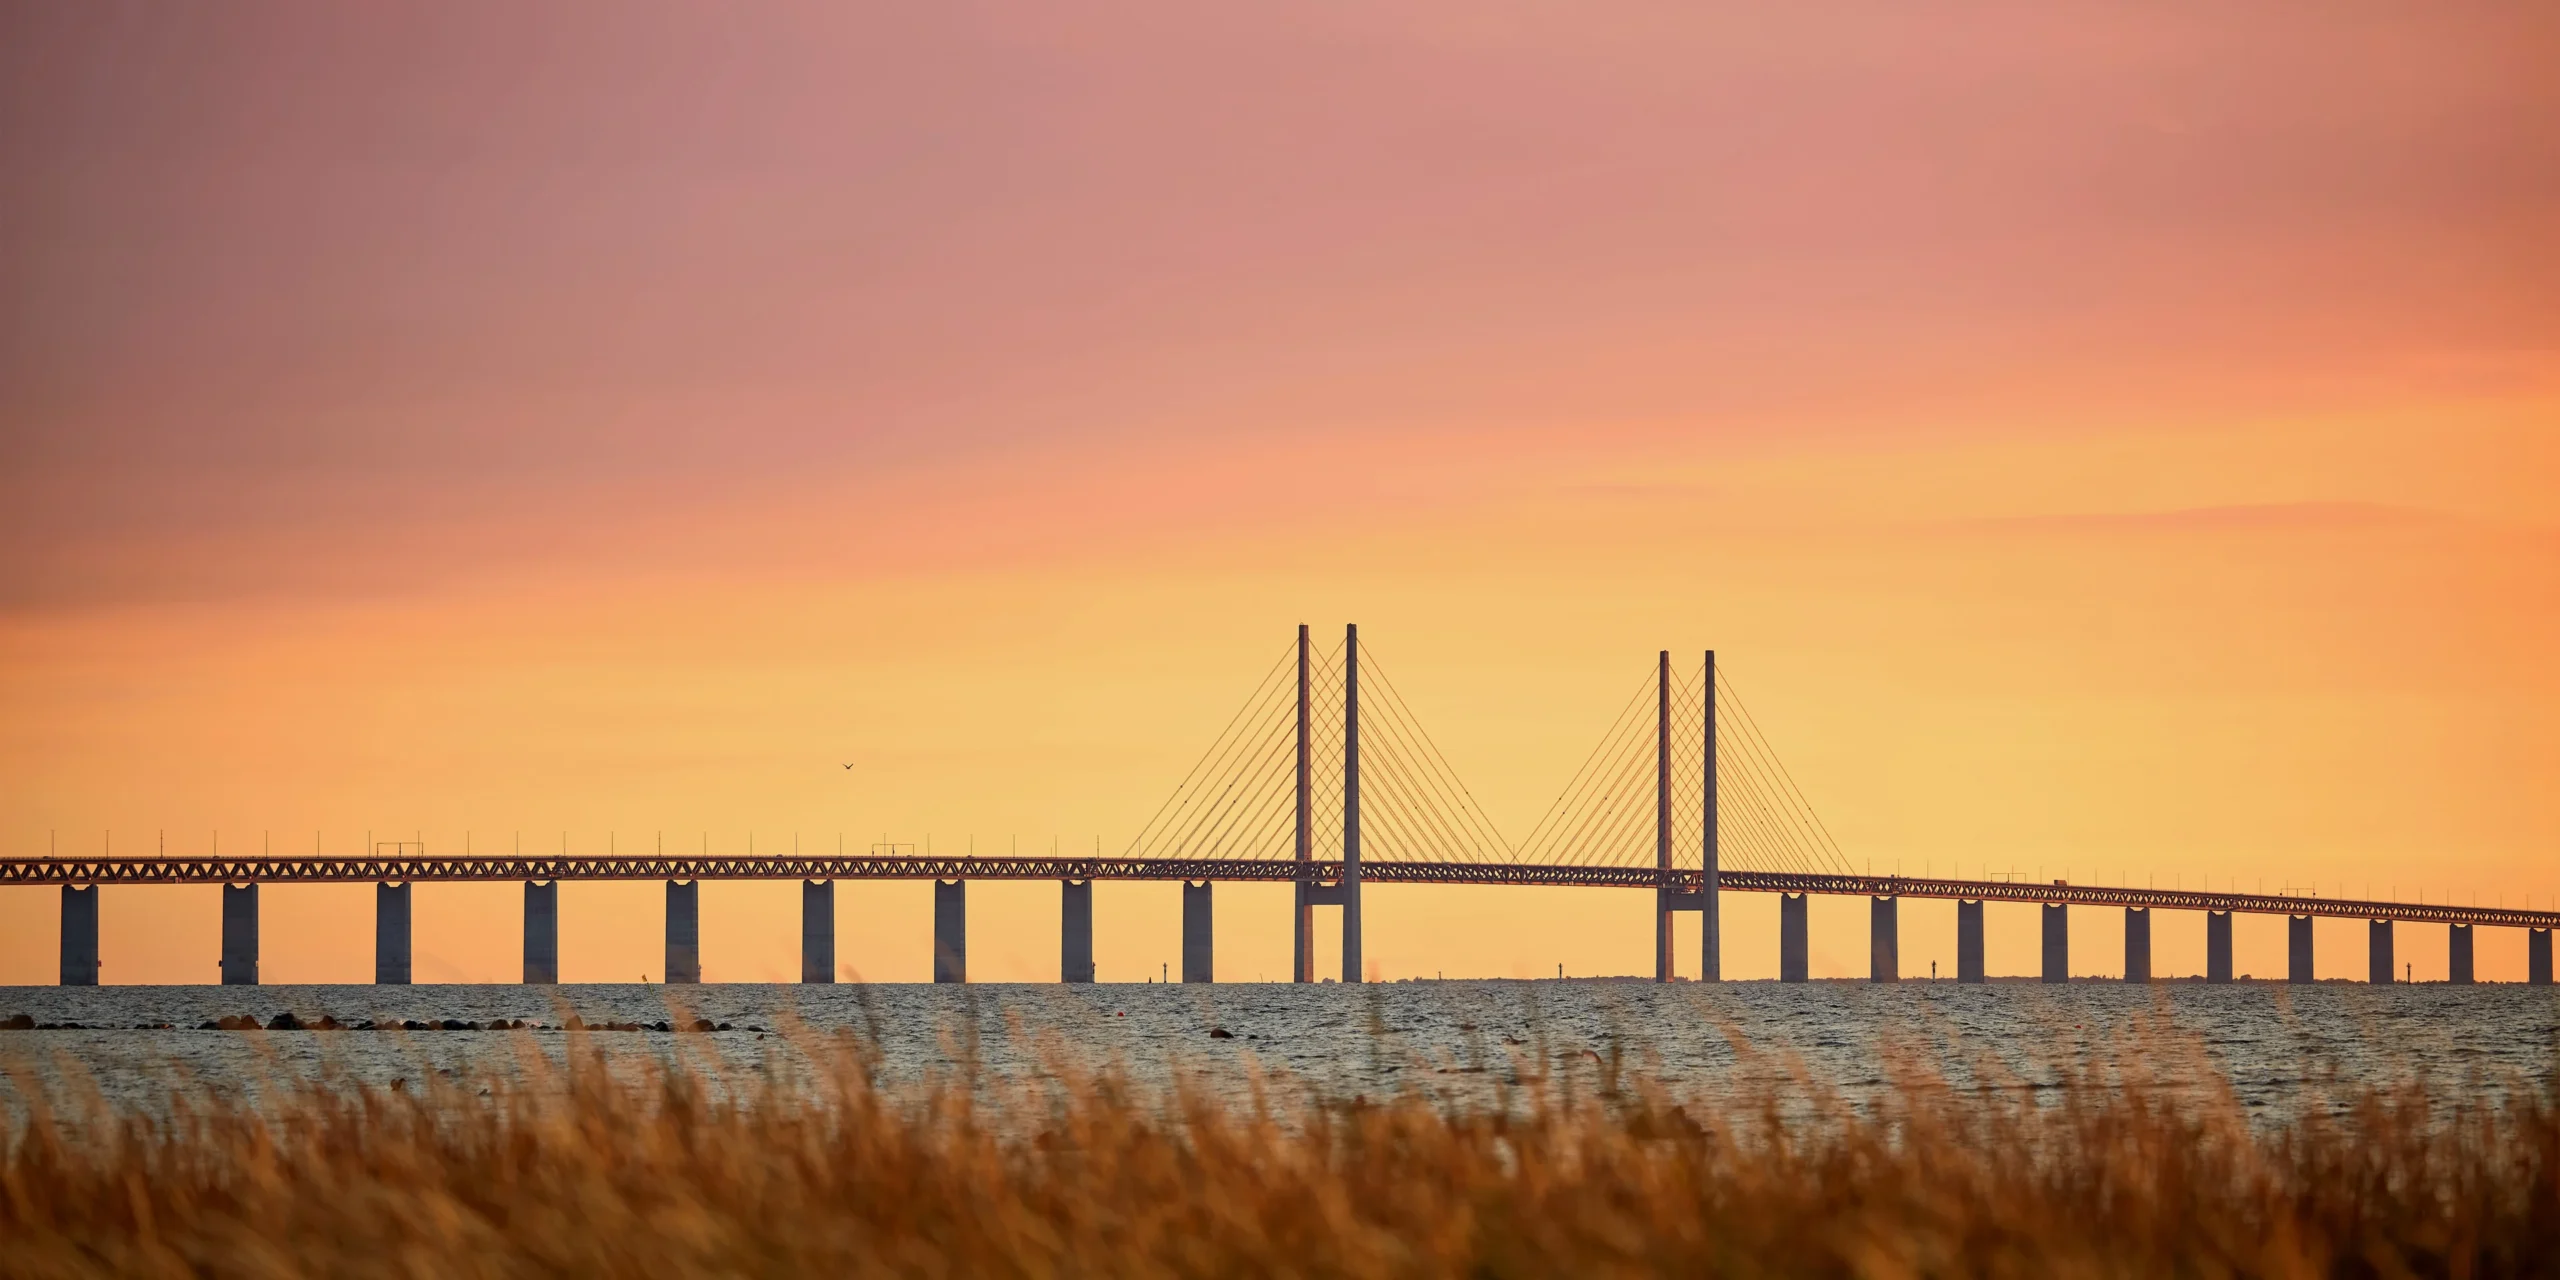 Siffror. Säljer. Siffror är något. Hur många Öresundsbroar ska norra Sverige bygga?